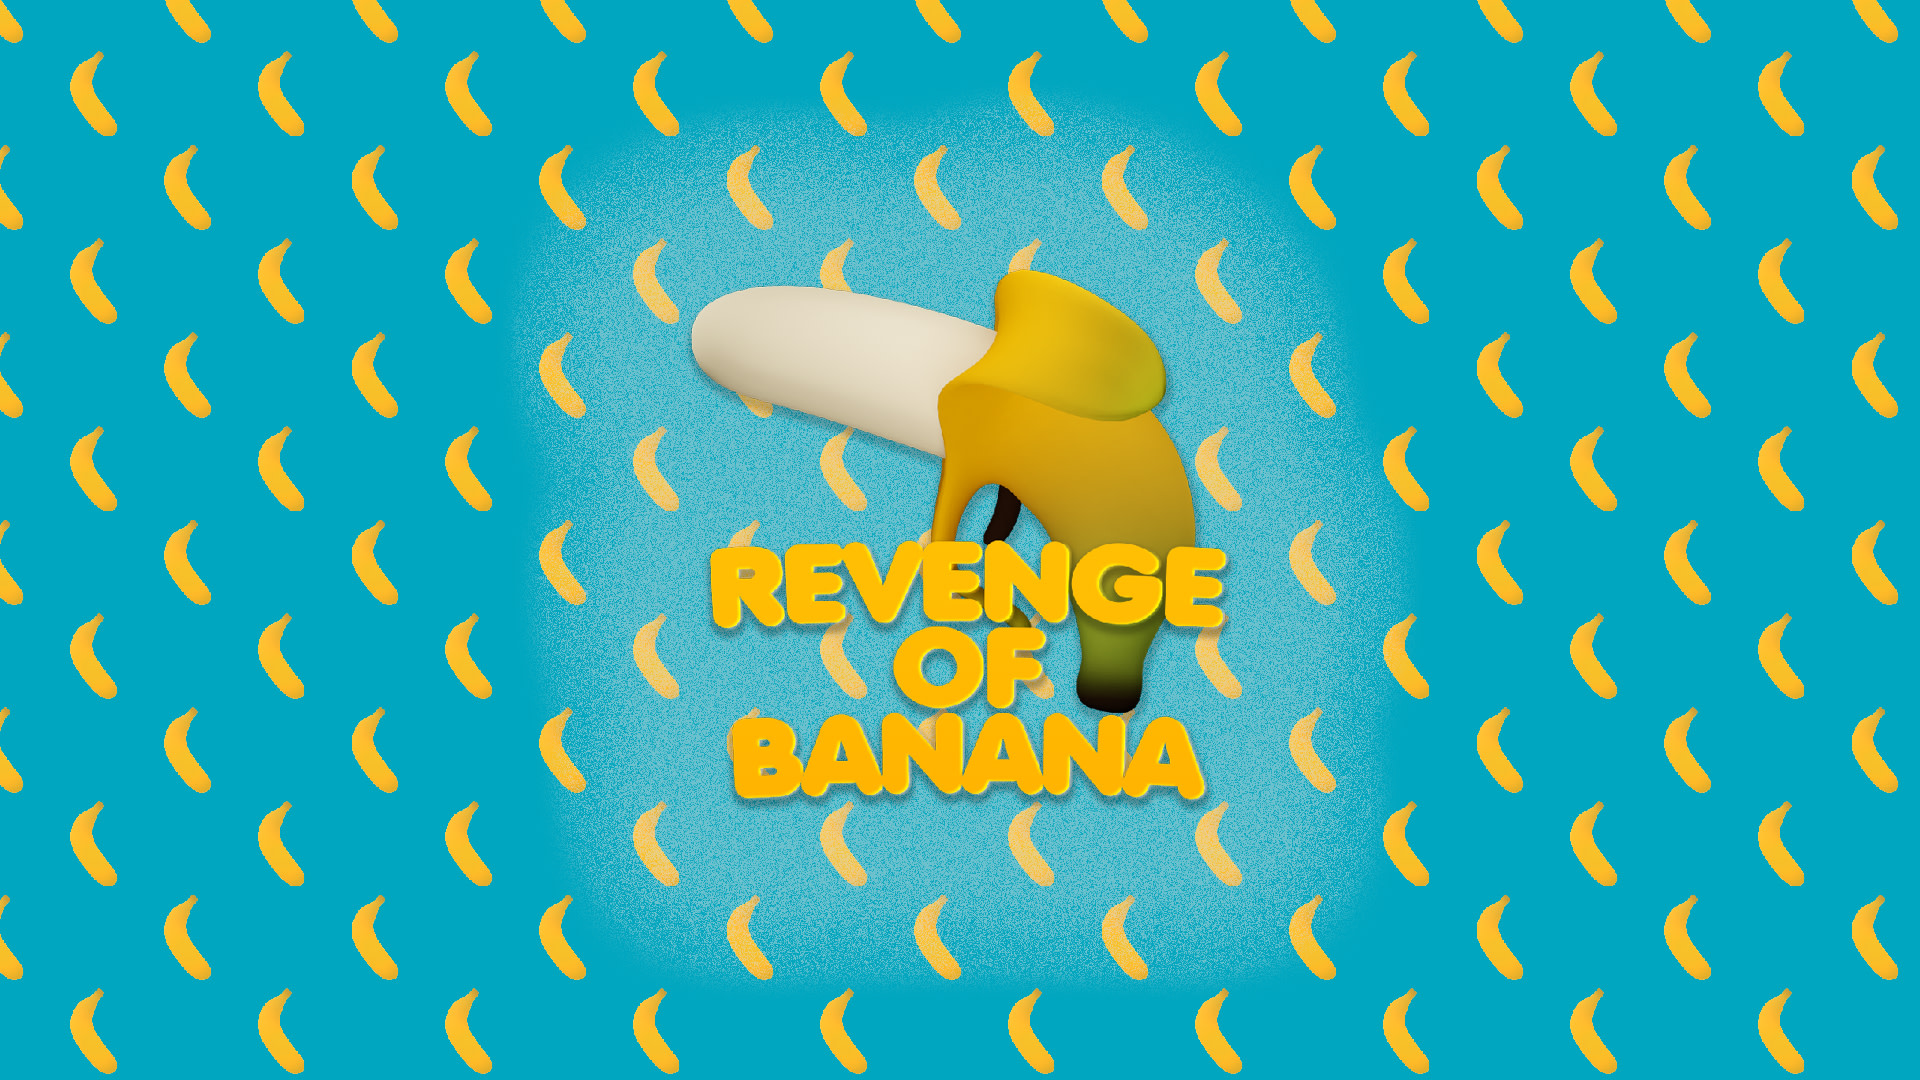 Revenge of Banana